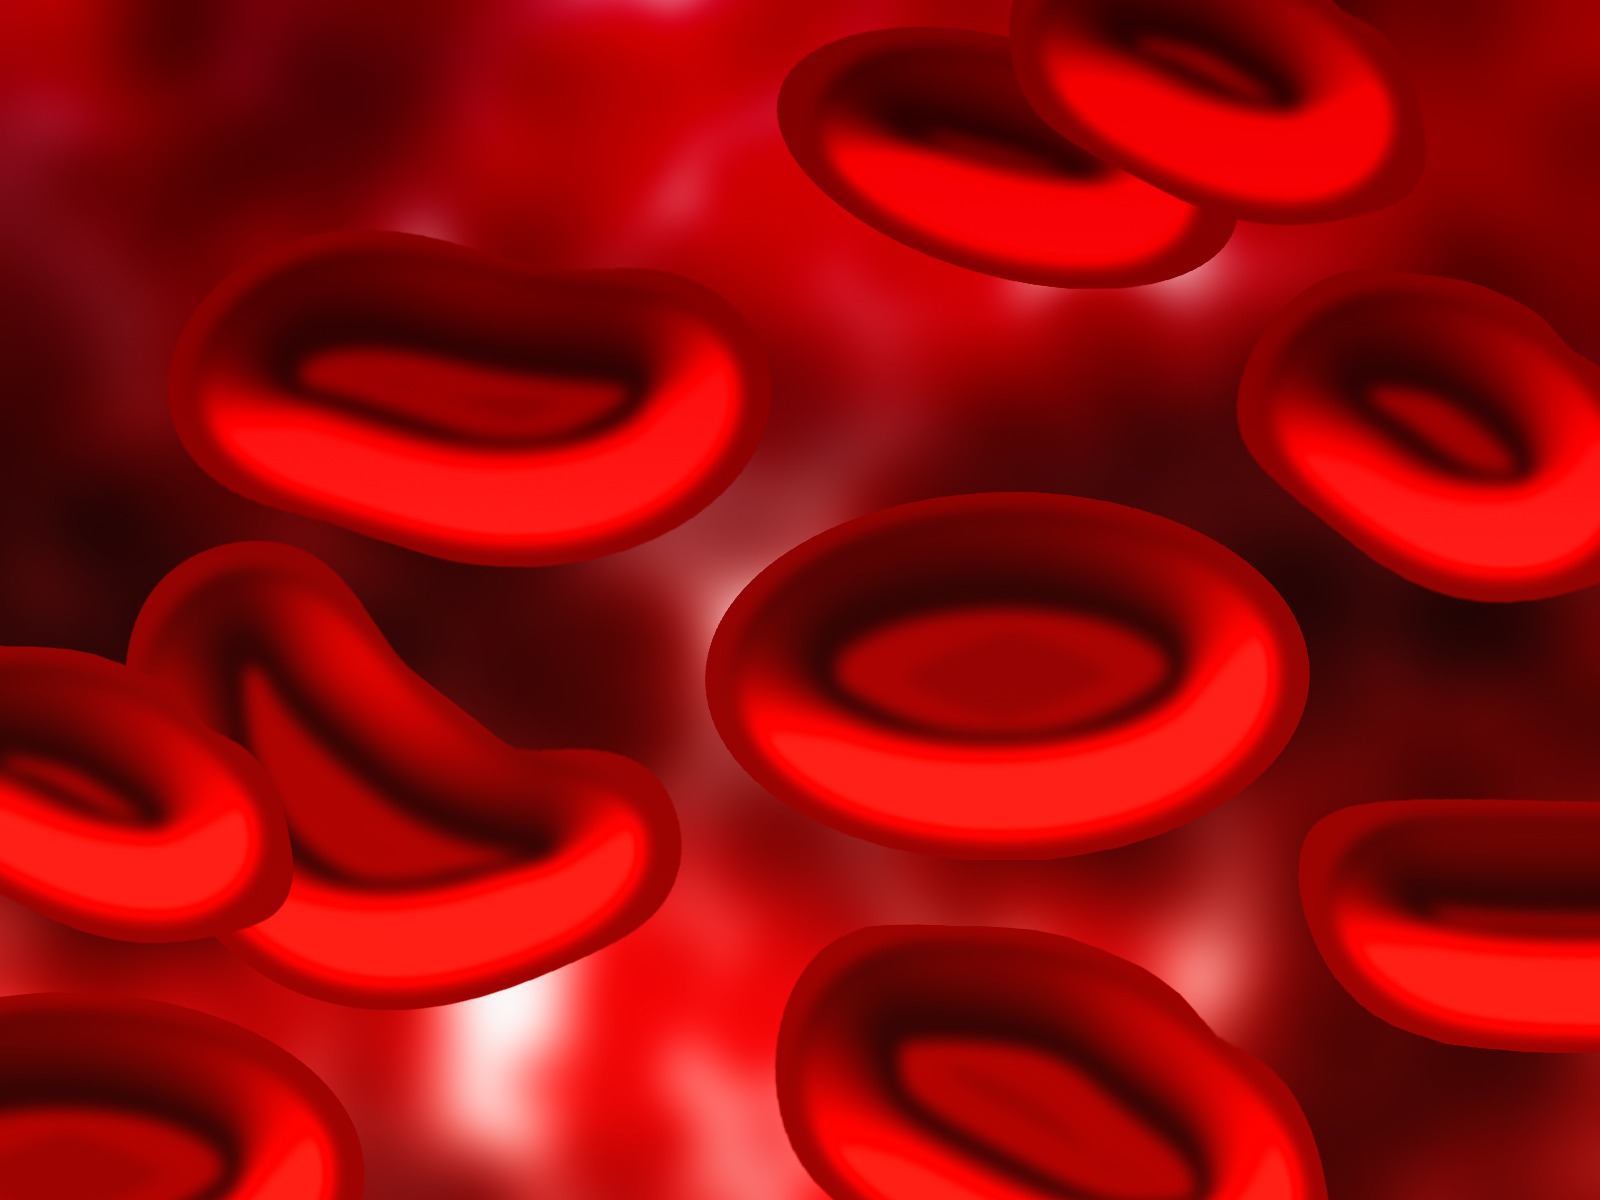 Les globules rouges ont une forme de disque biconcave (la zone centrale est plus fine que la périphérie). Ils sont très déformables, ce qui leur permet de passer dans des capillaires sanguins très fins, dont le diamètre est inférieur au leur. © geralt, Pixabay, DP